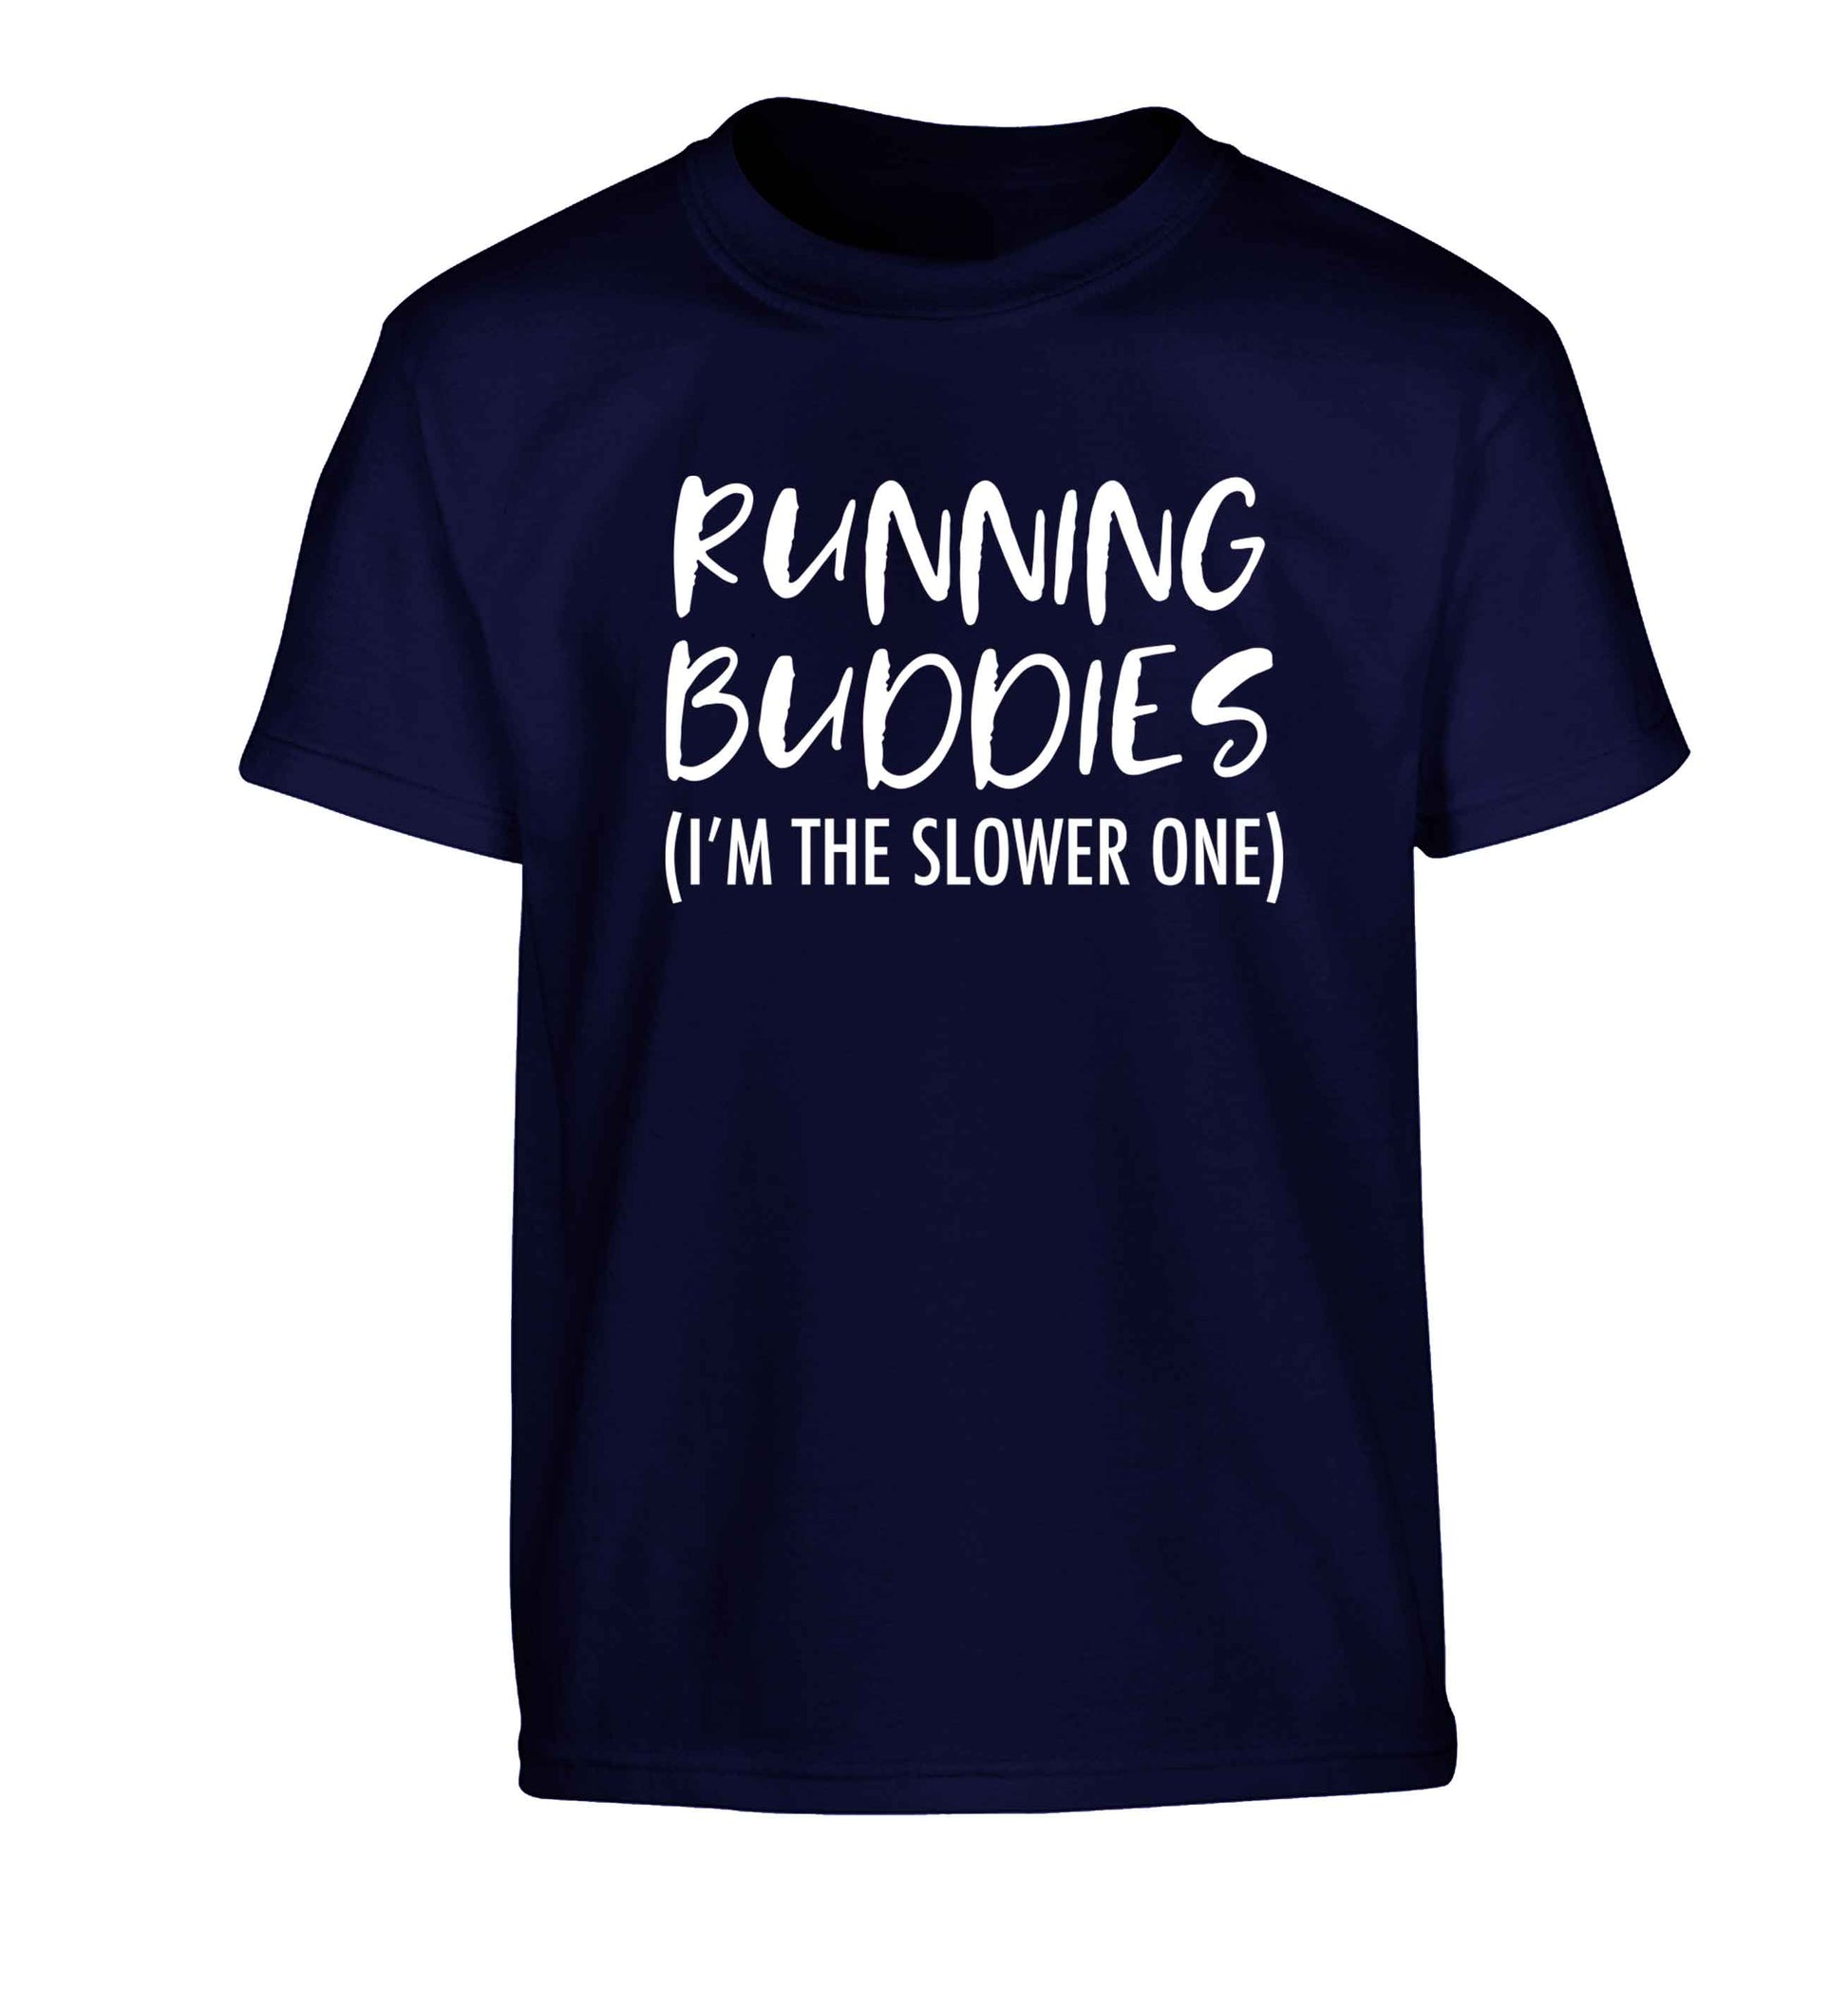 Running buddies (I'm the slower one) Children's navy Tshirt 12-13 Years